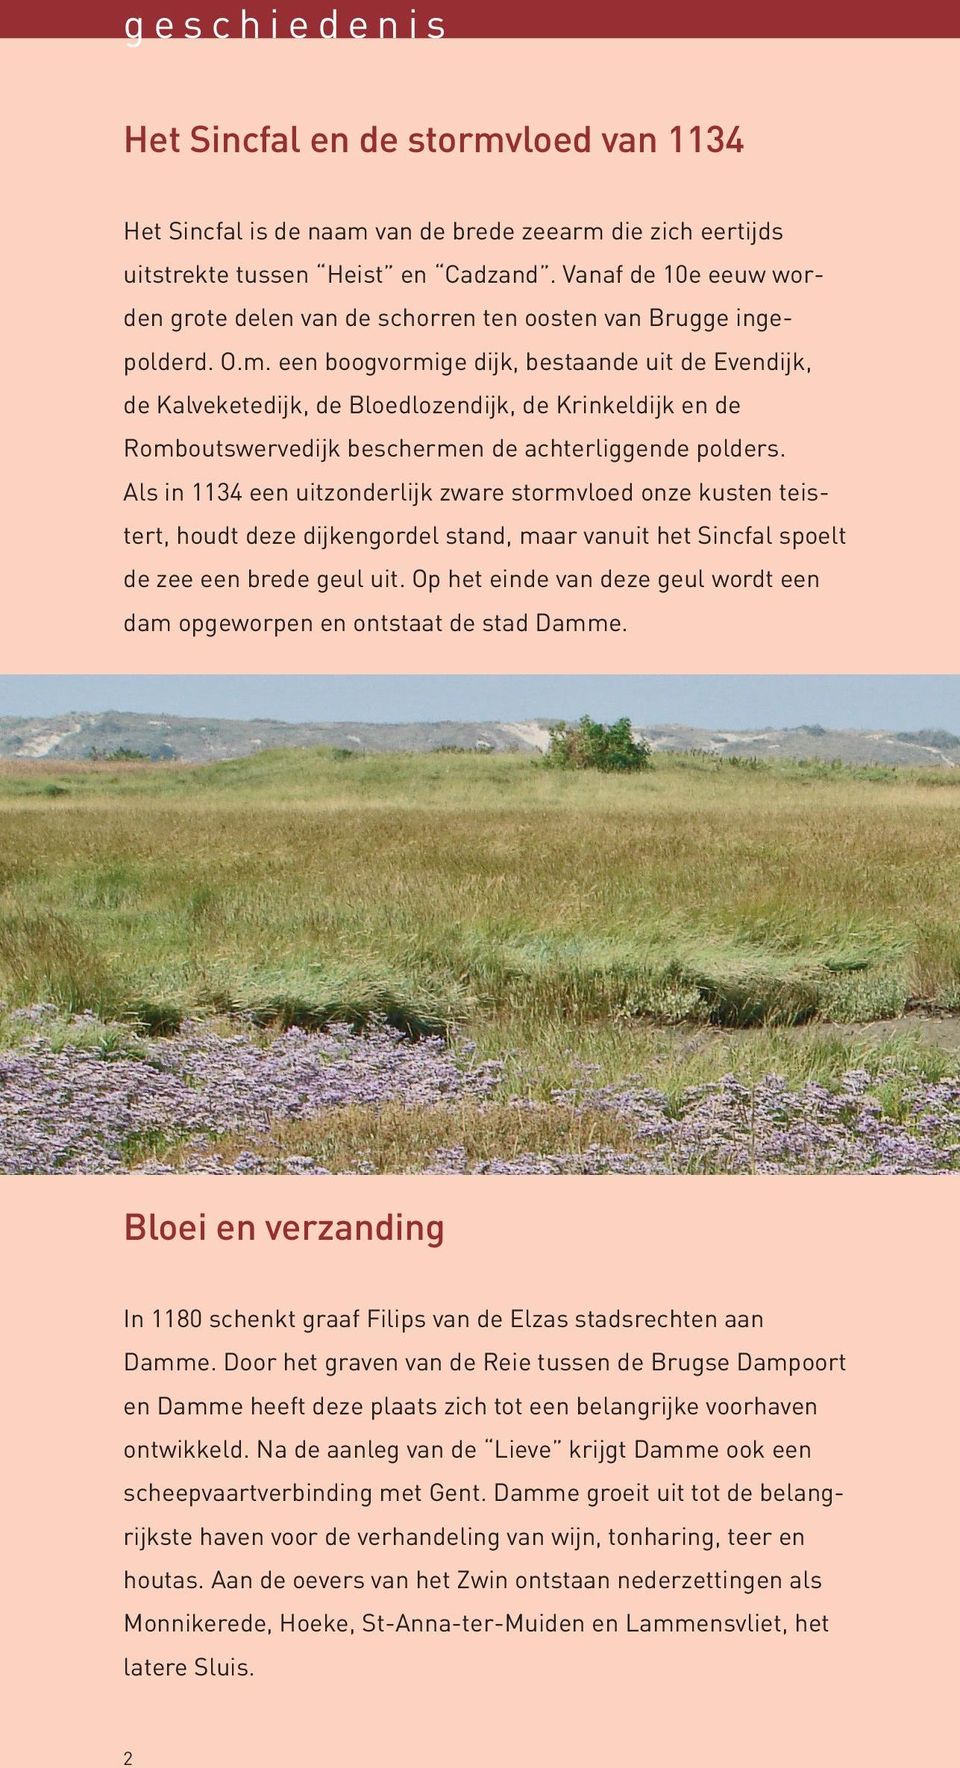 een boogvormige dijk, bestaande uit de Evendijk, de Kalveketedijk, de Bloedlozendijk, de Krinkeldijk en de Romboutswervedijk beschermen de achterliggende polders.